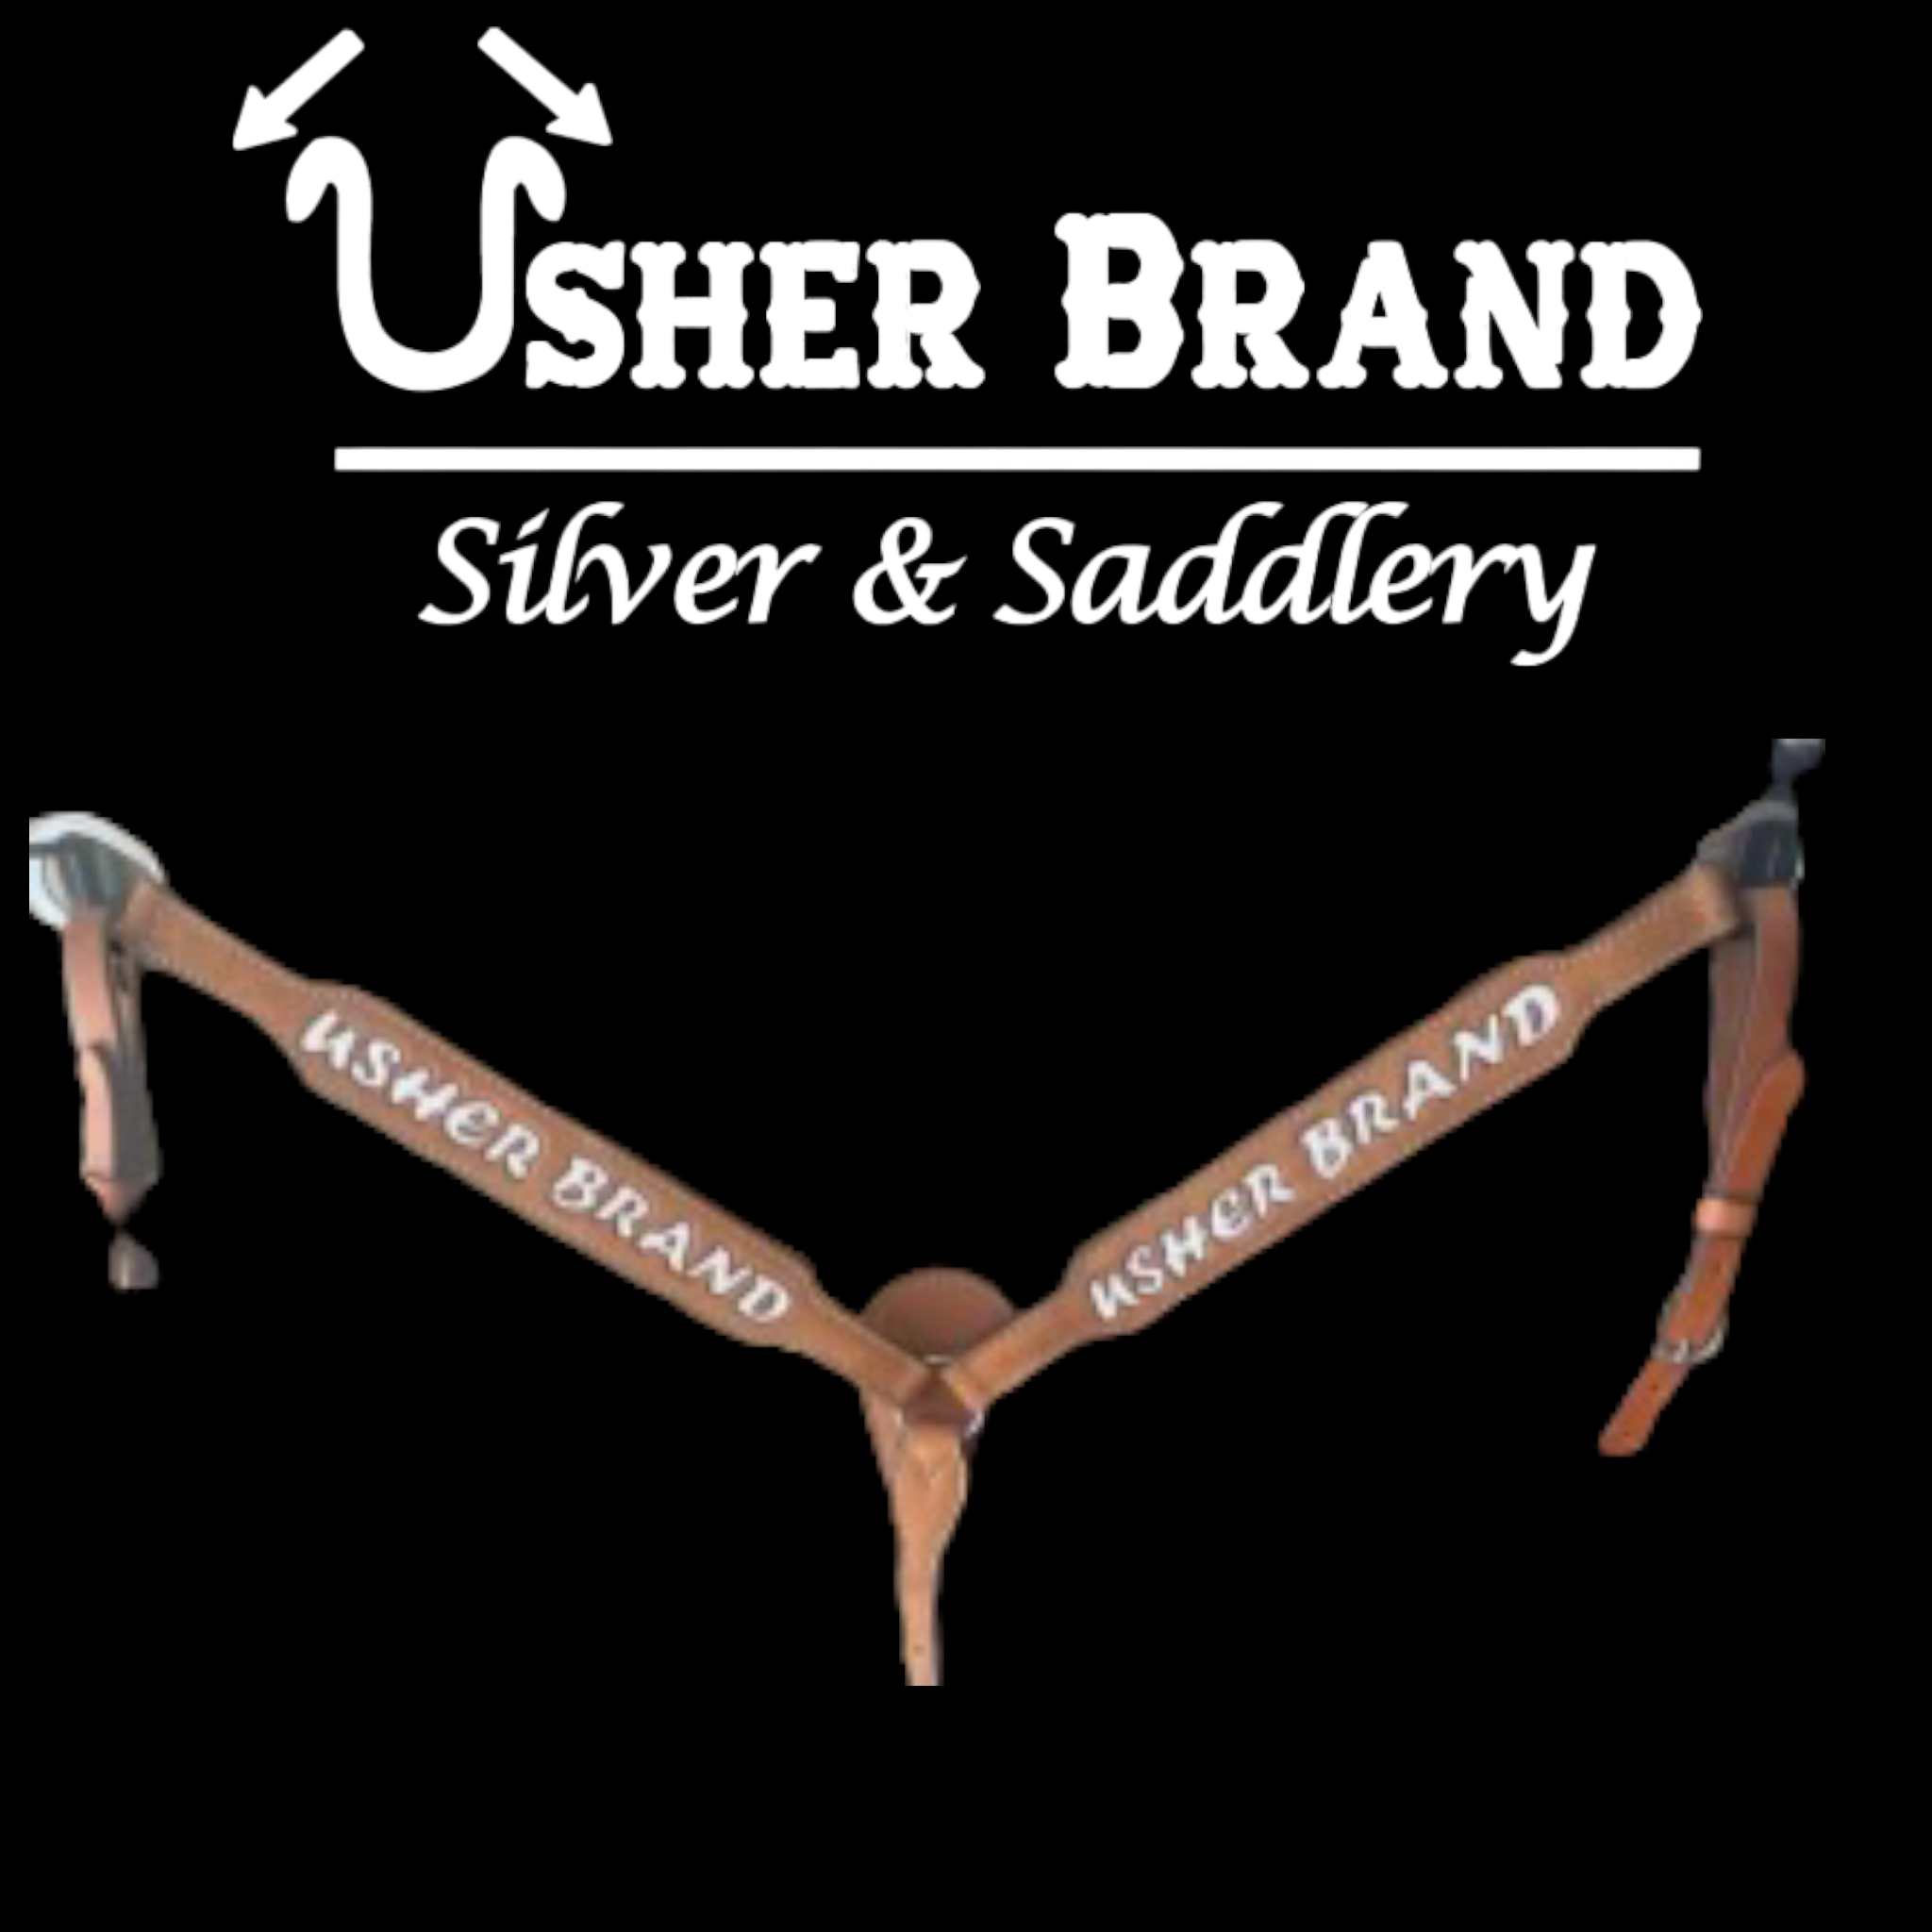 In Stock Breast Collars – Usher Brand Silver & Saddlery